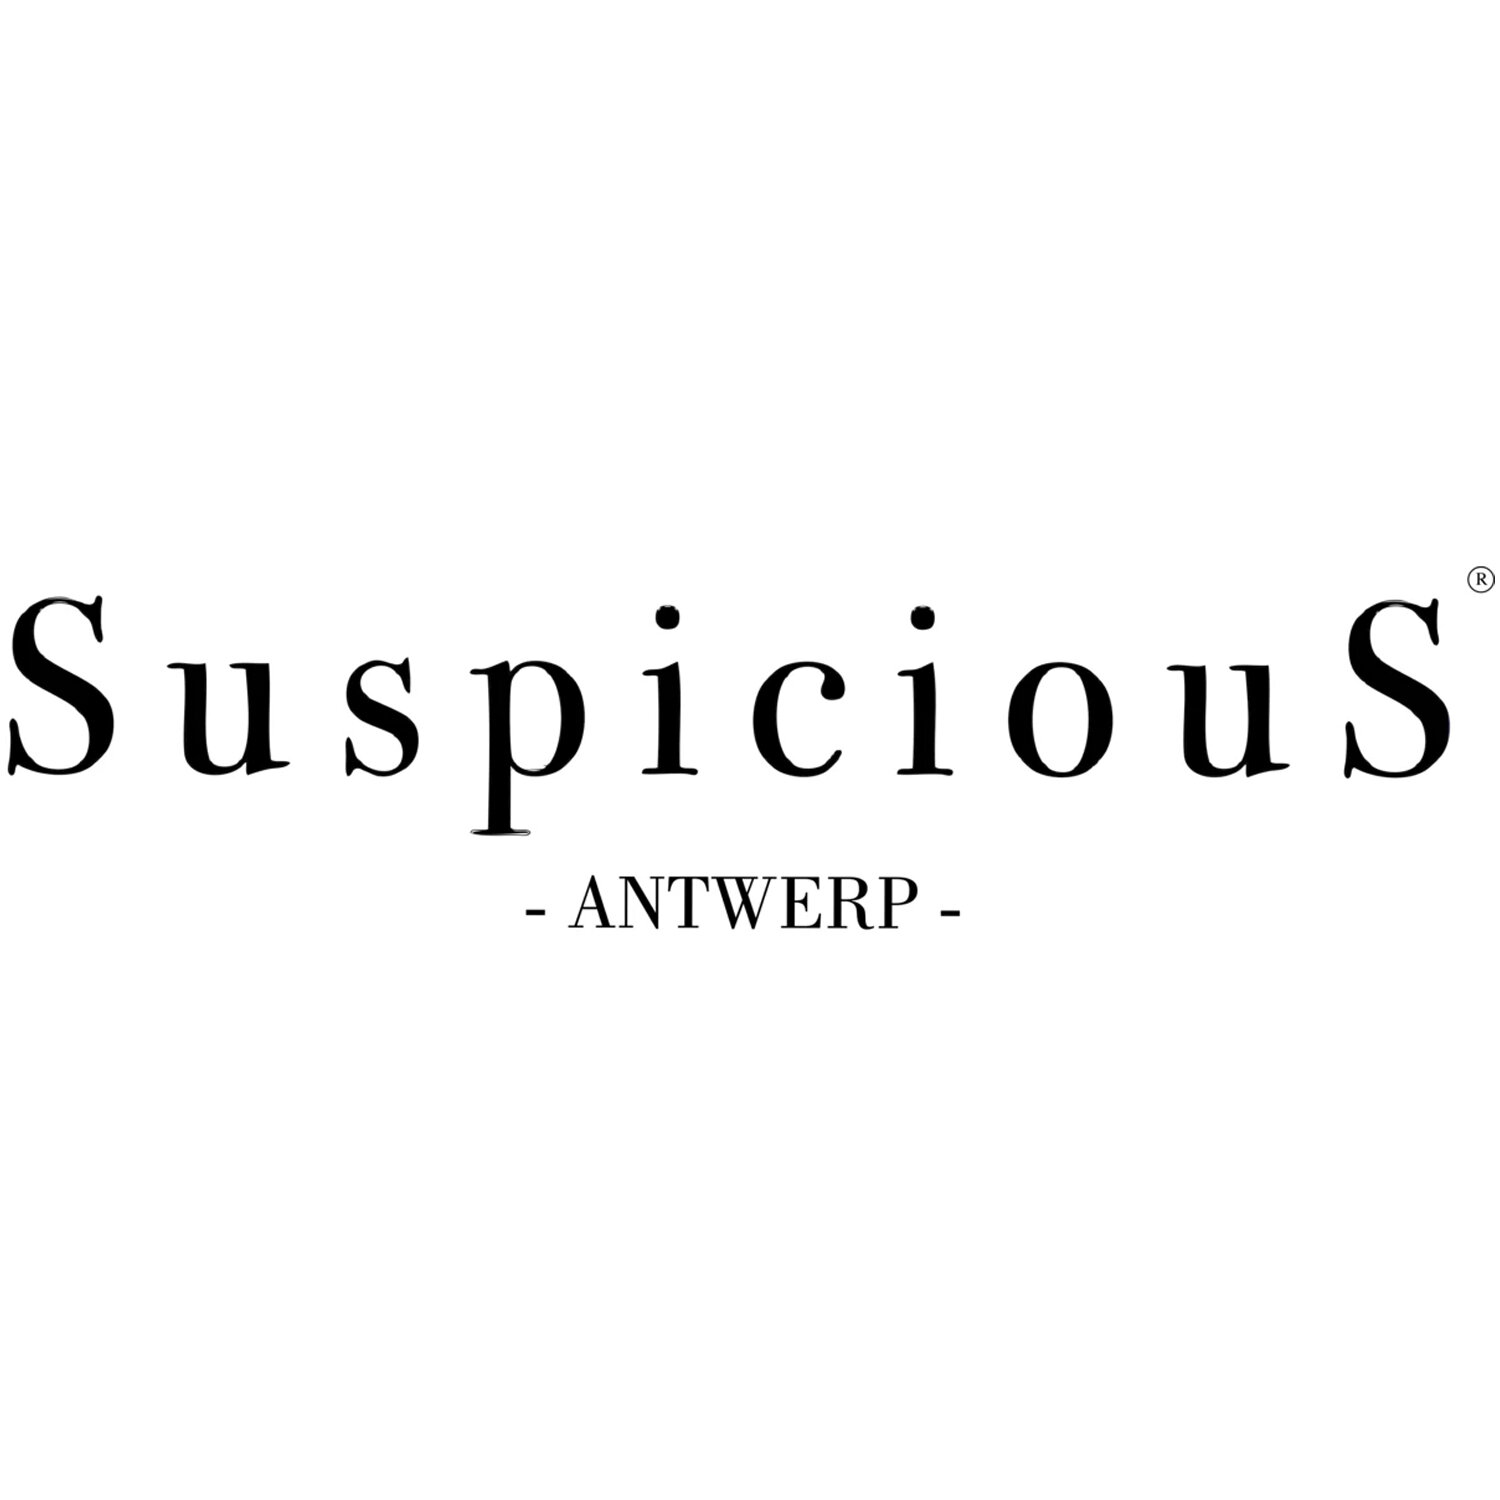 Suspicious Antwerp.jpg